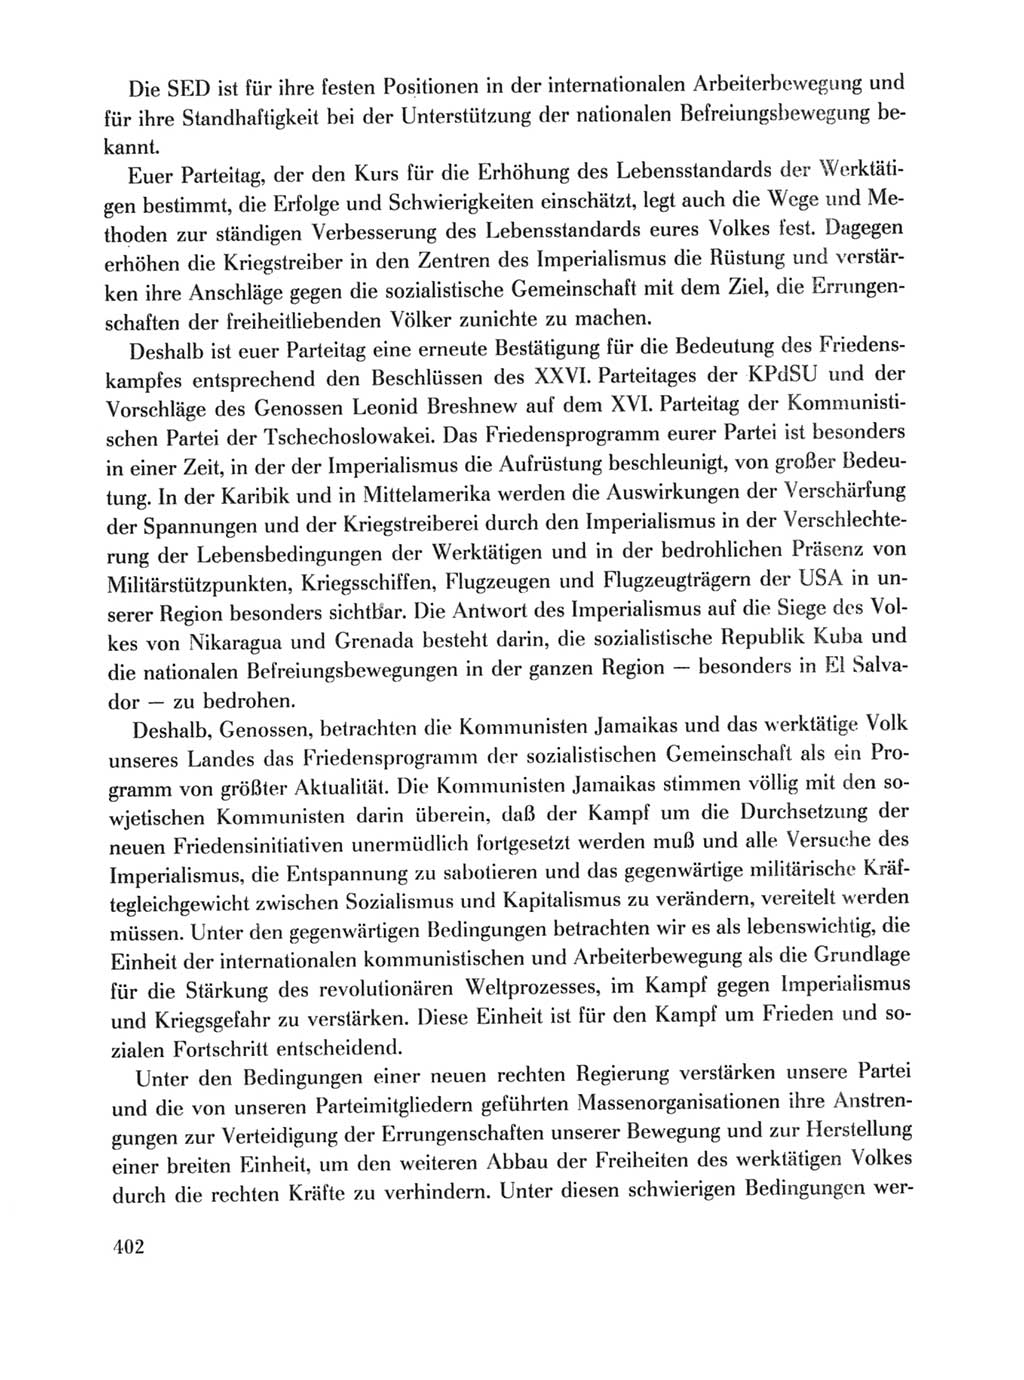 Protokoll der Verhandlungen des Ⅹ. Parteitages der Sozialistischen Einheitspartei Deutschlands (SED) [Deutsche Demokratische Republik (DDR)] 1981, Band 1, Seite 402 (Prot. Verh. Ⅹ. PT SED DDR 1981, Bd. 1, S. 402)